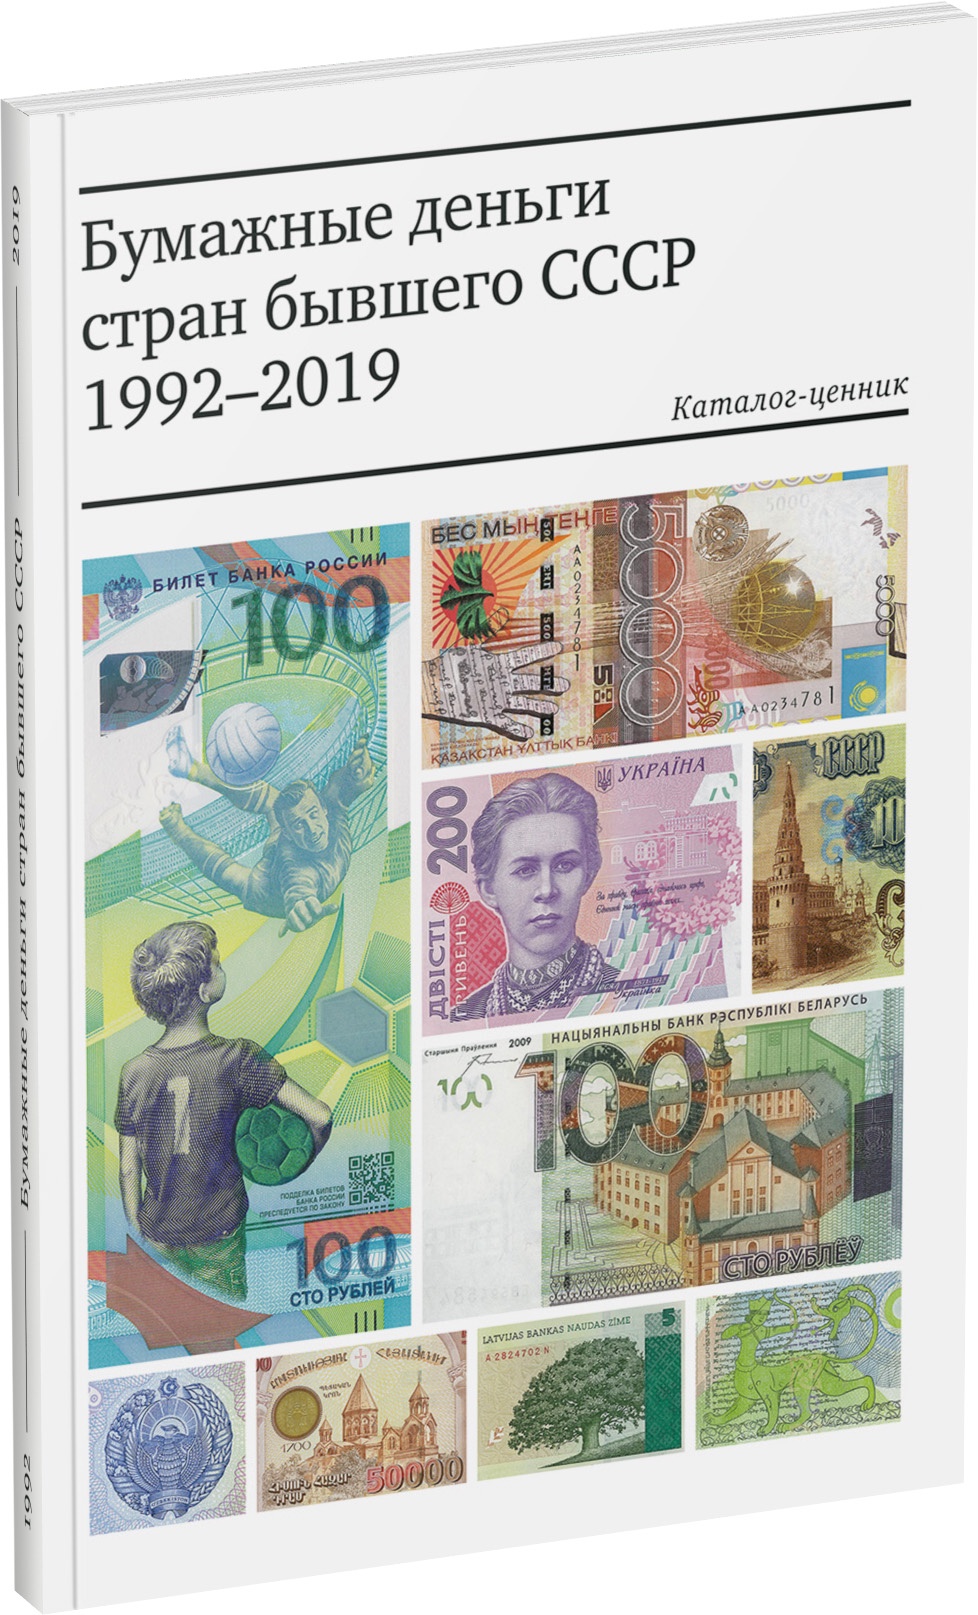 Бумажные деньги стран бывшего СССР (1992-2018). Каталог-ценник